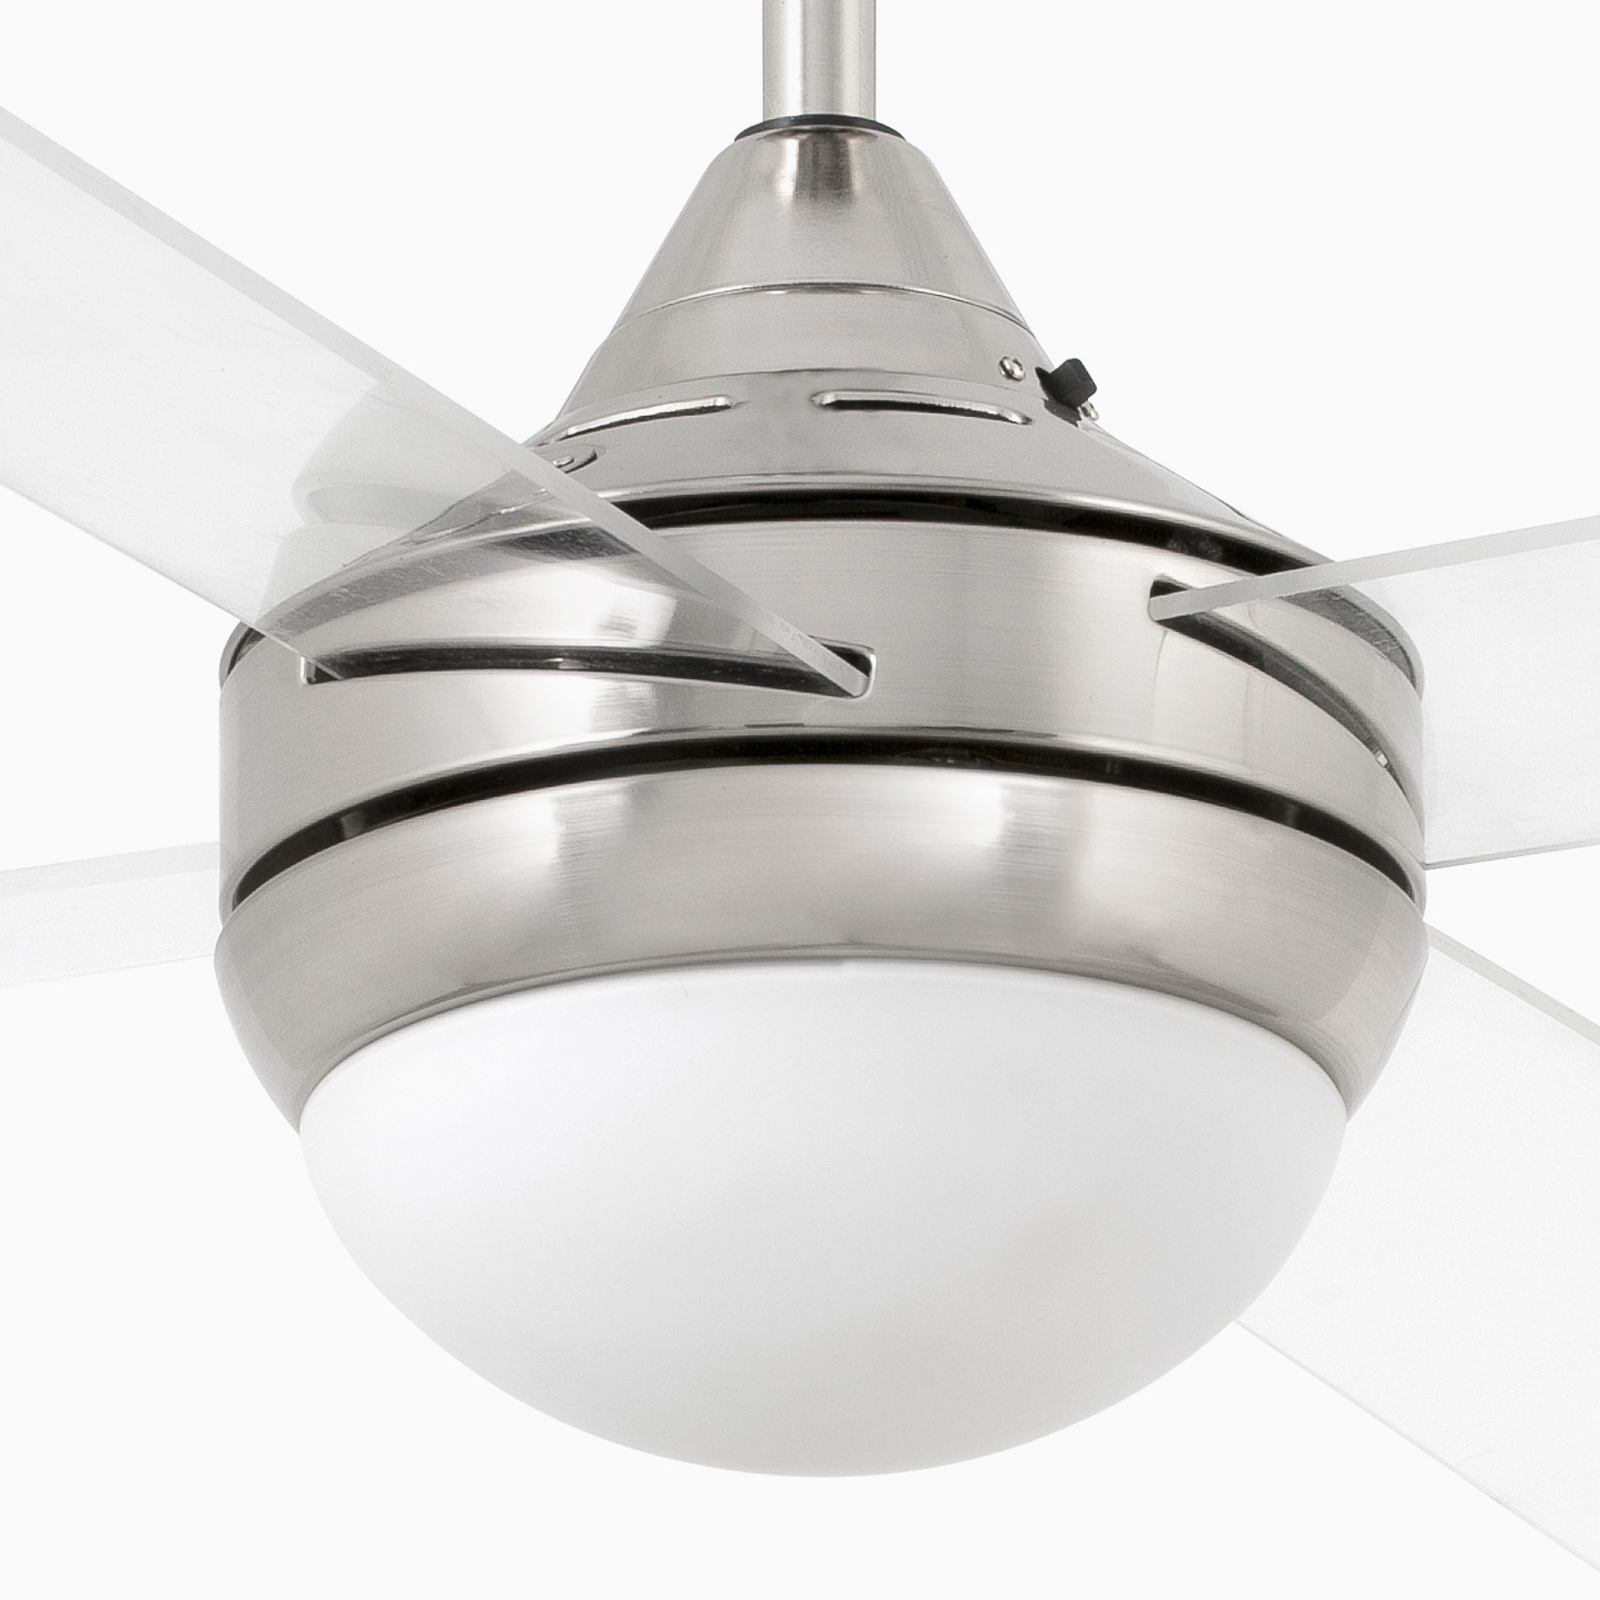 Mini Icaria S ceiling fan light nickel/clear